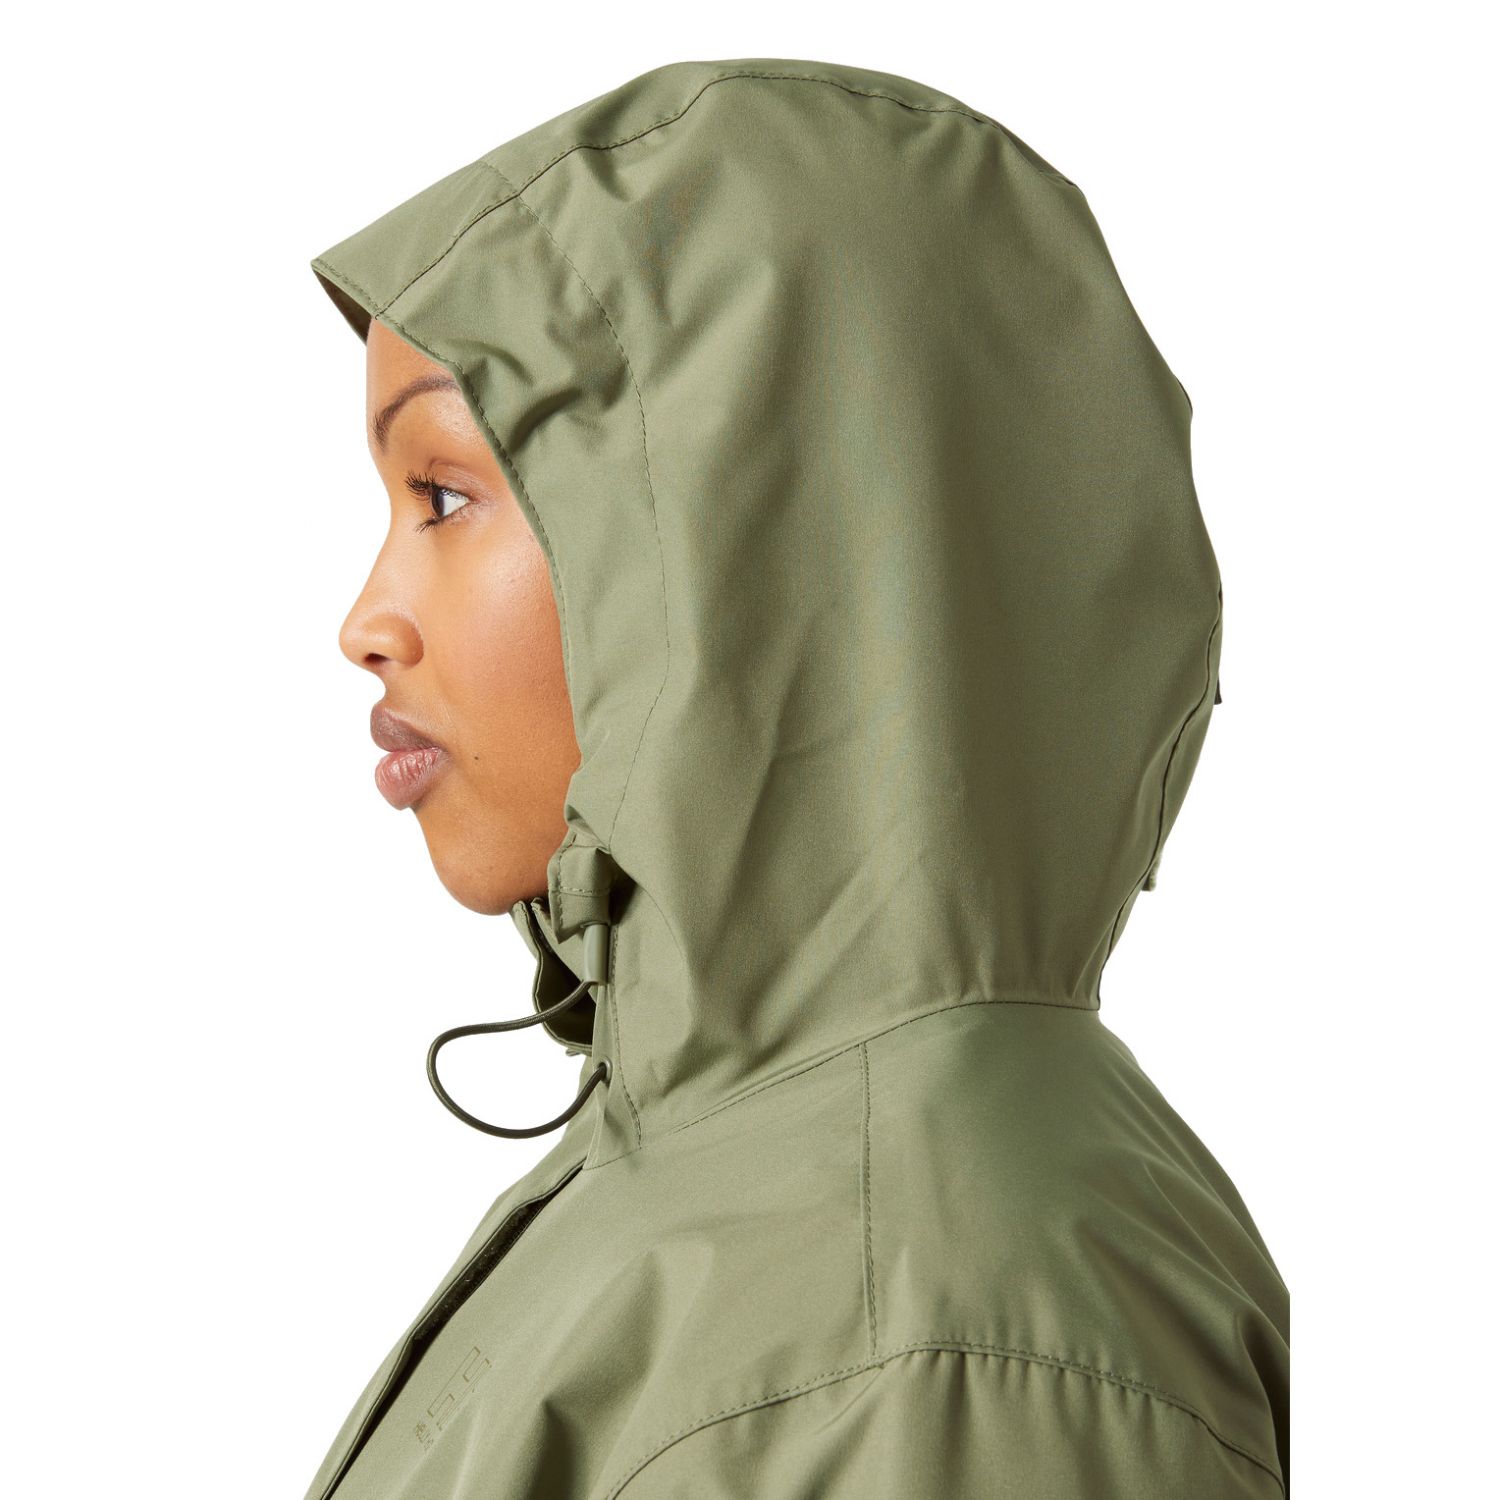 Helly Hansen Seven J Plus, rain jacket, women, plus size, lav green